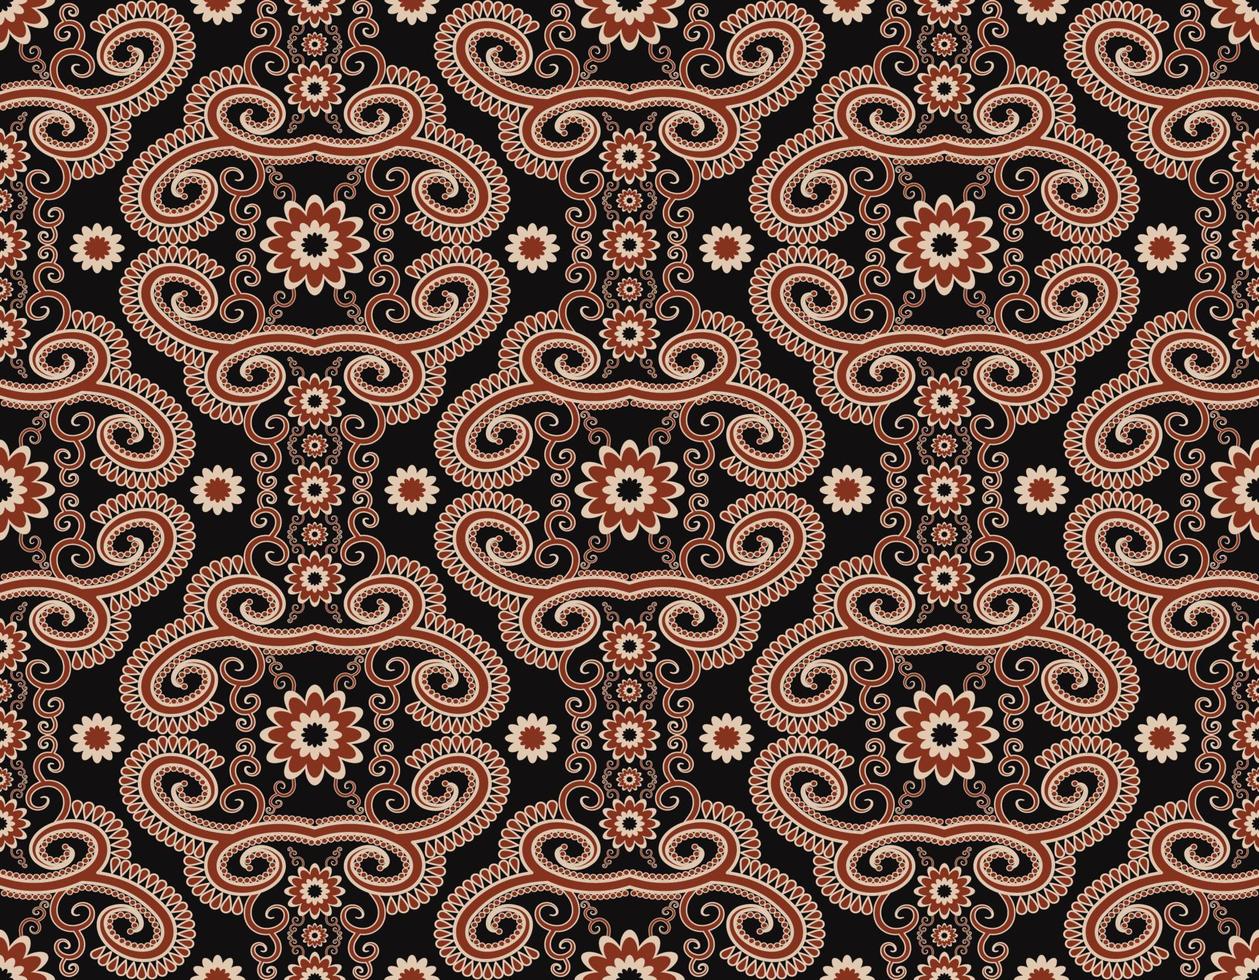 abstrakte florale Form Vintage rote Farbe nahtlose Muster auf schwarzem Hintergrund. Verwendung für Stoffe, Textilien, Innendekorationselemente, Polster, Verpackungen. vektor